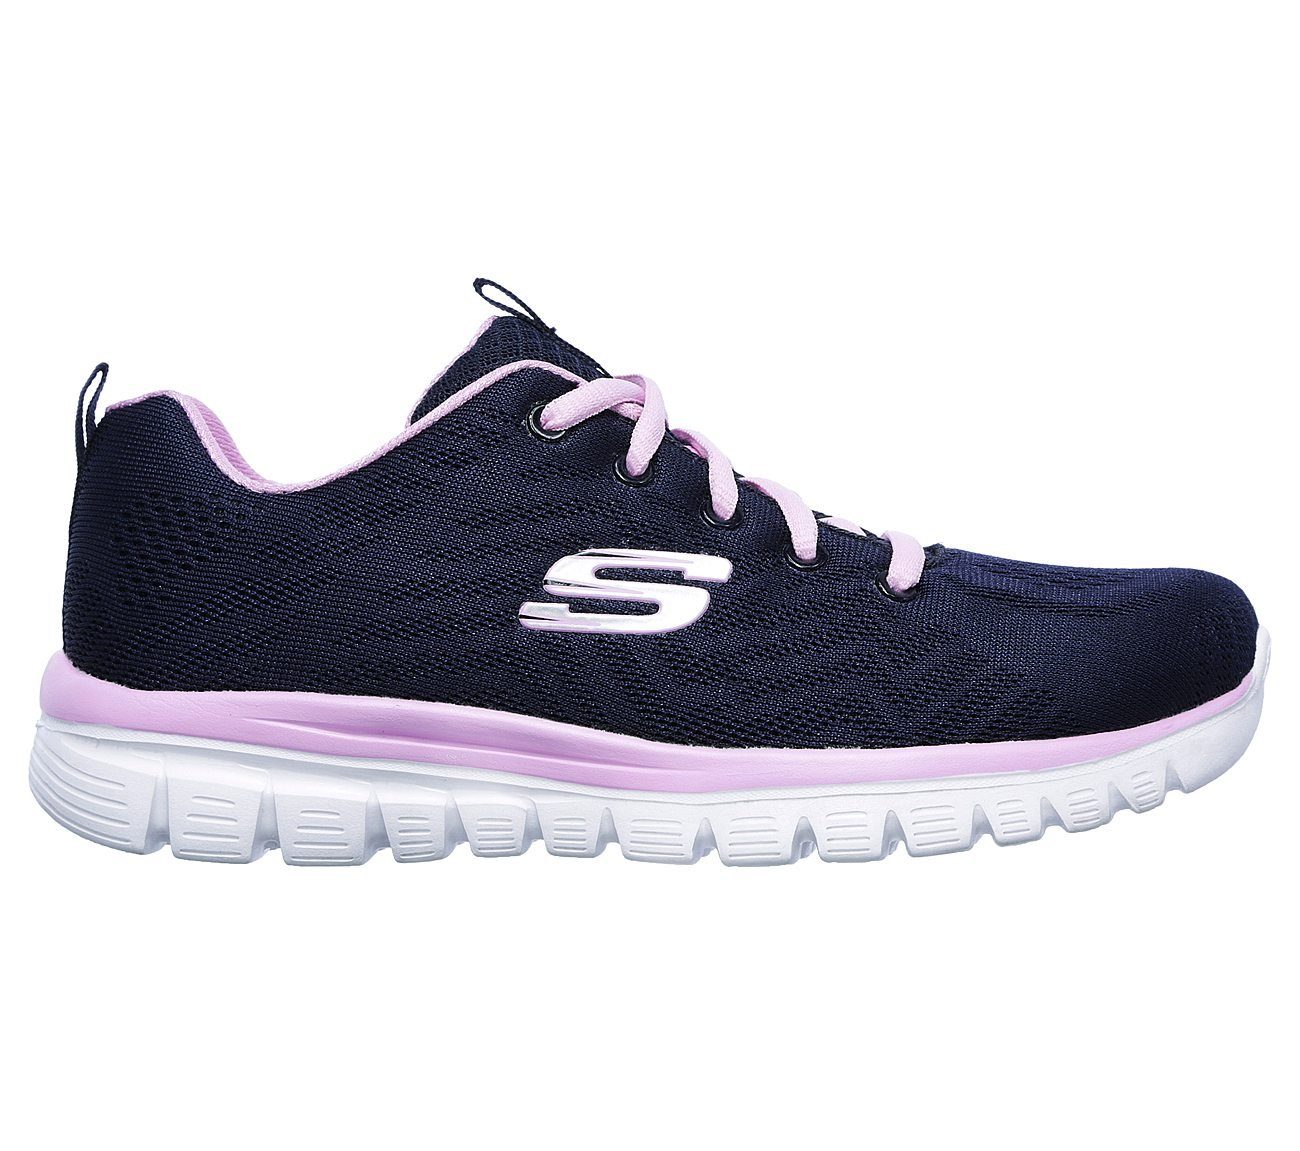 Skechers GRACEFUL GET CONNECTED Sneaker navy/pink